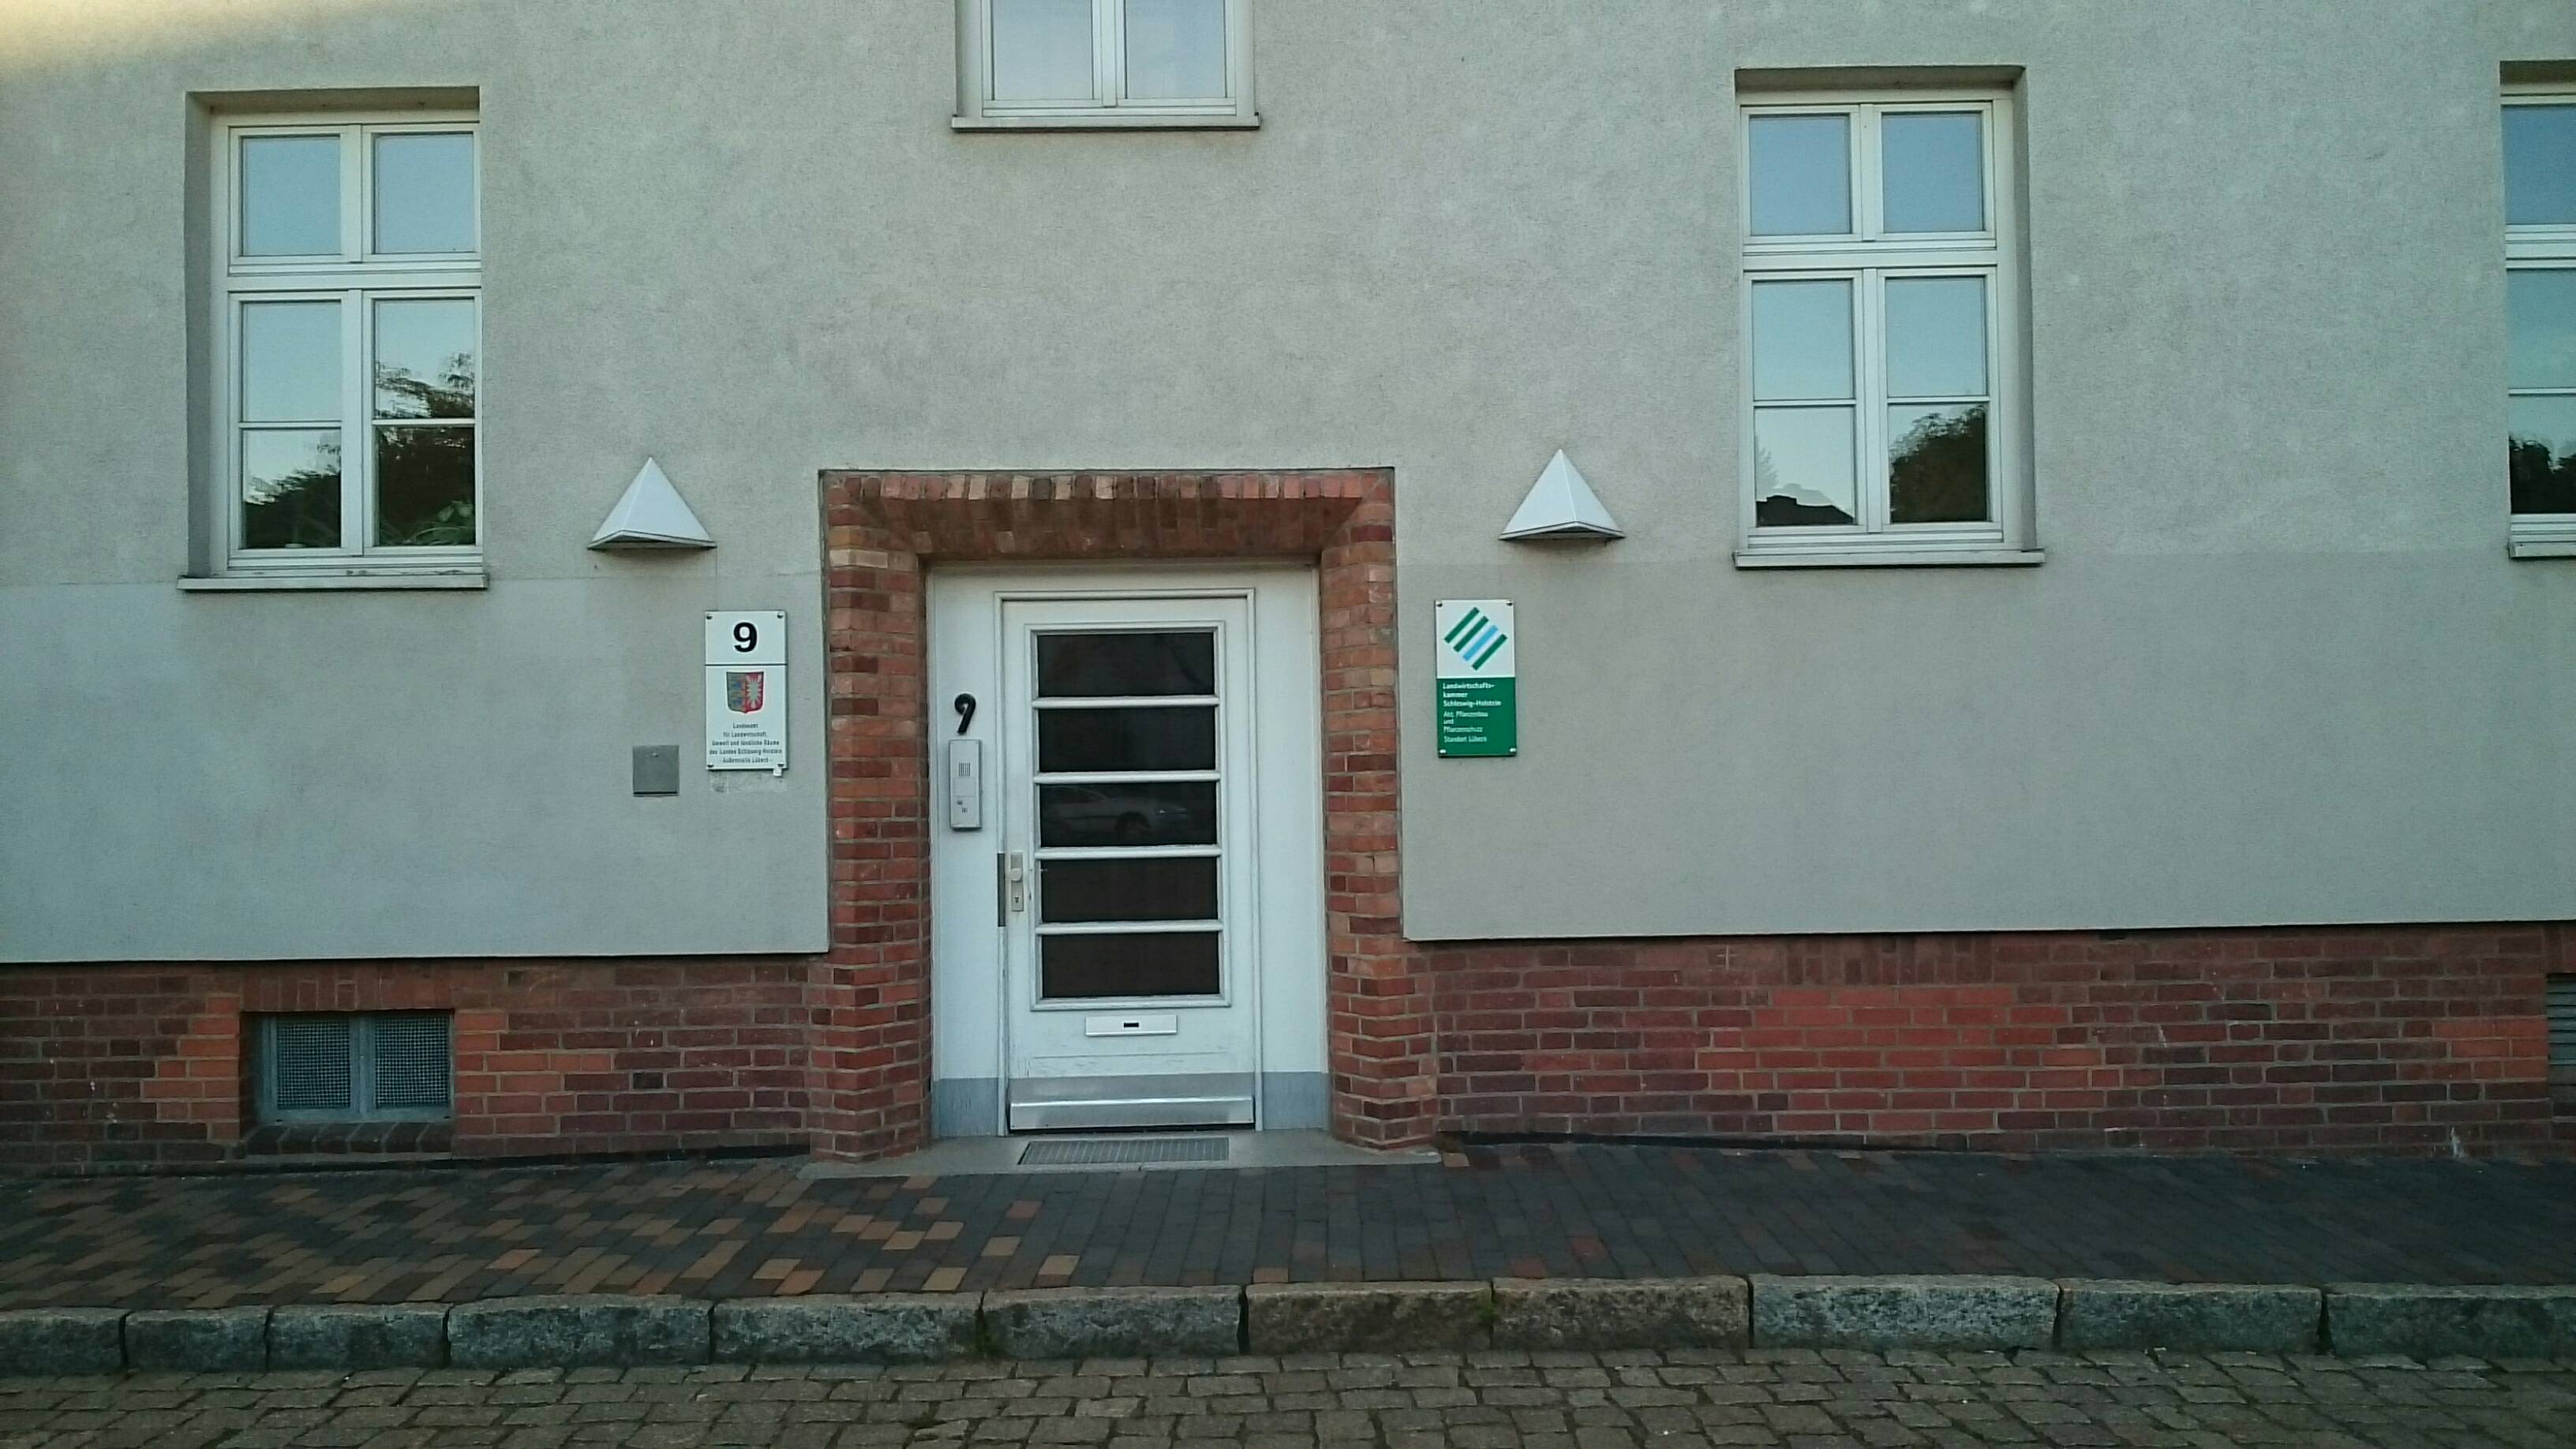 Bild 1 Landesamt für Landwirtschaft, Umwelt und ländliche Räume in Lübeck